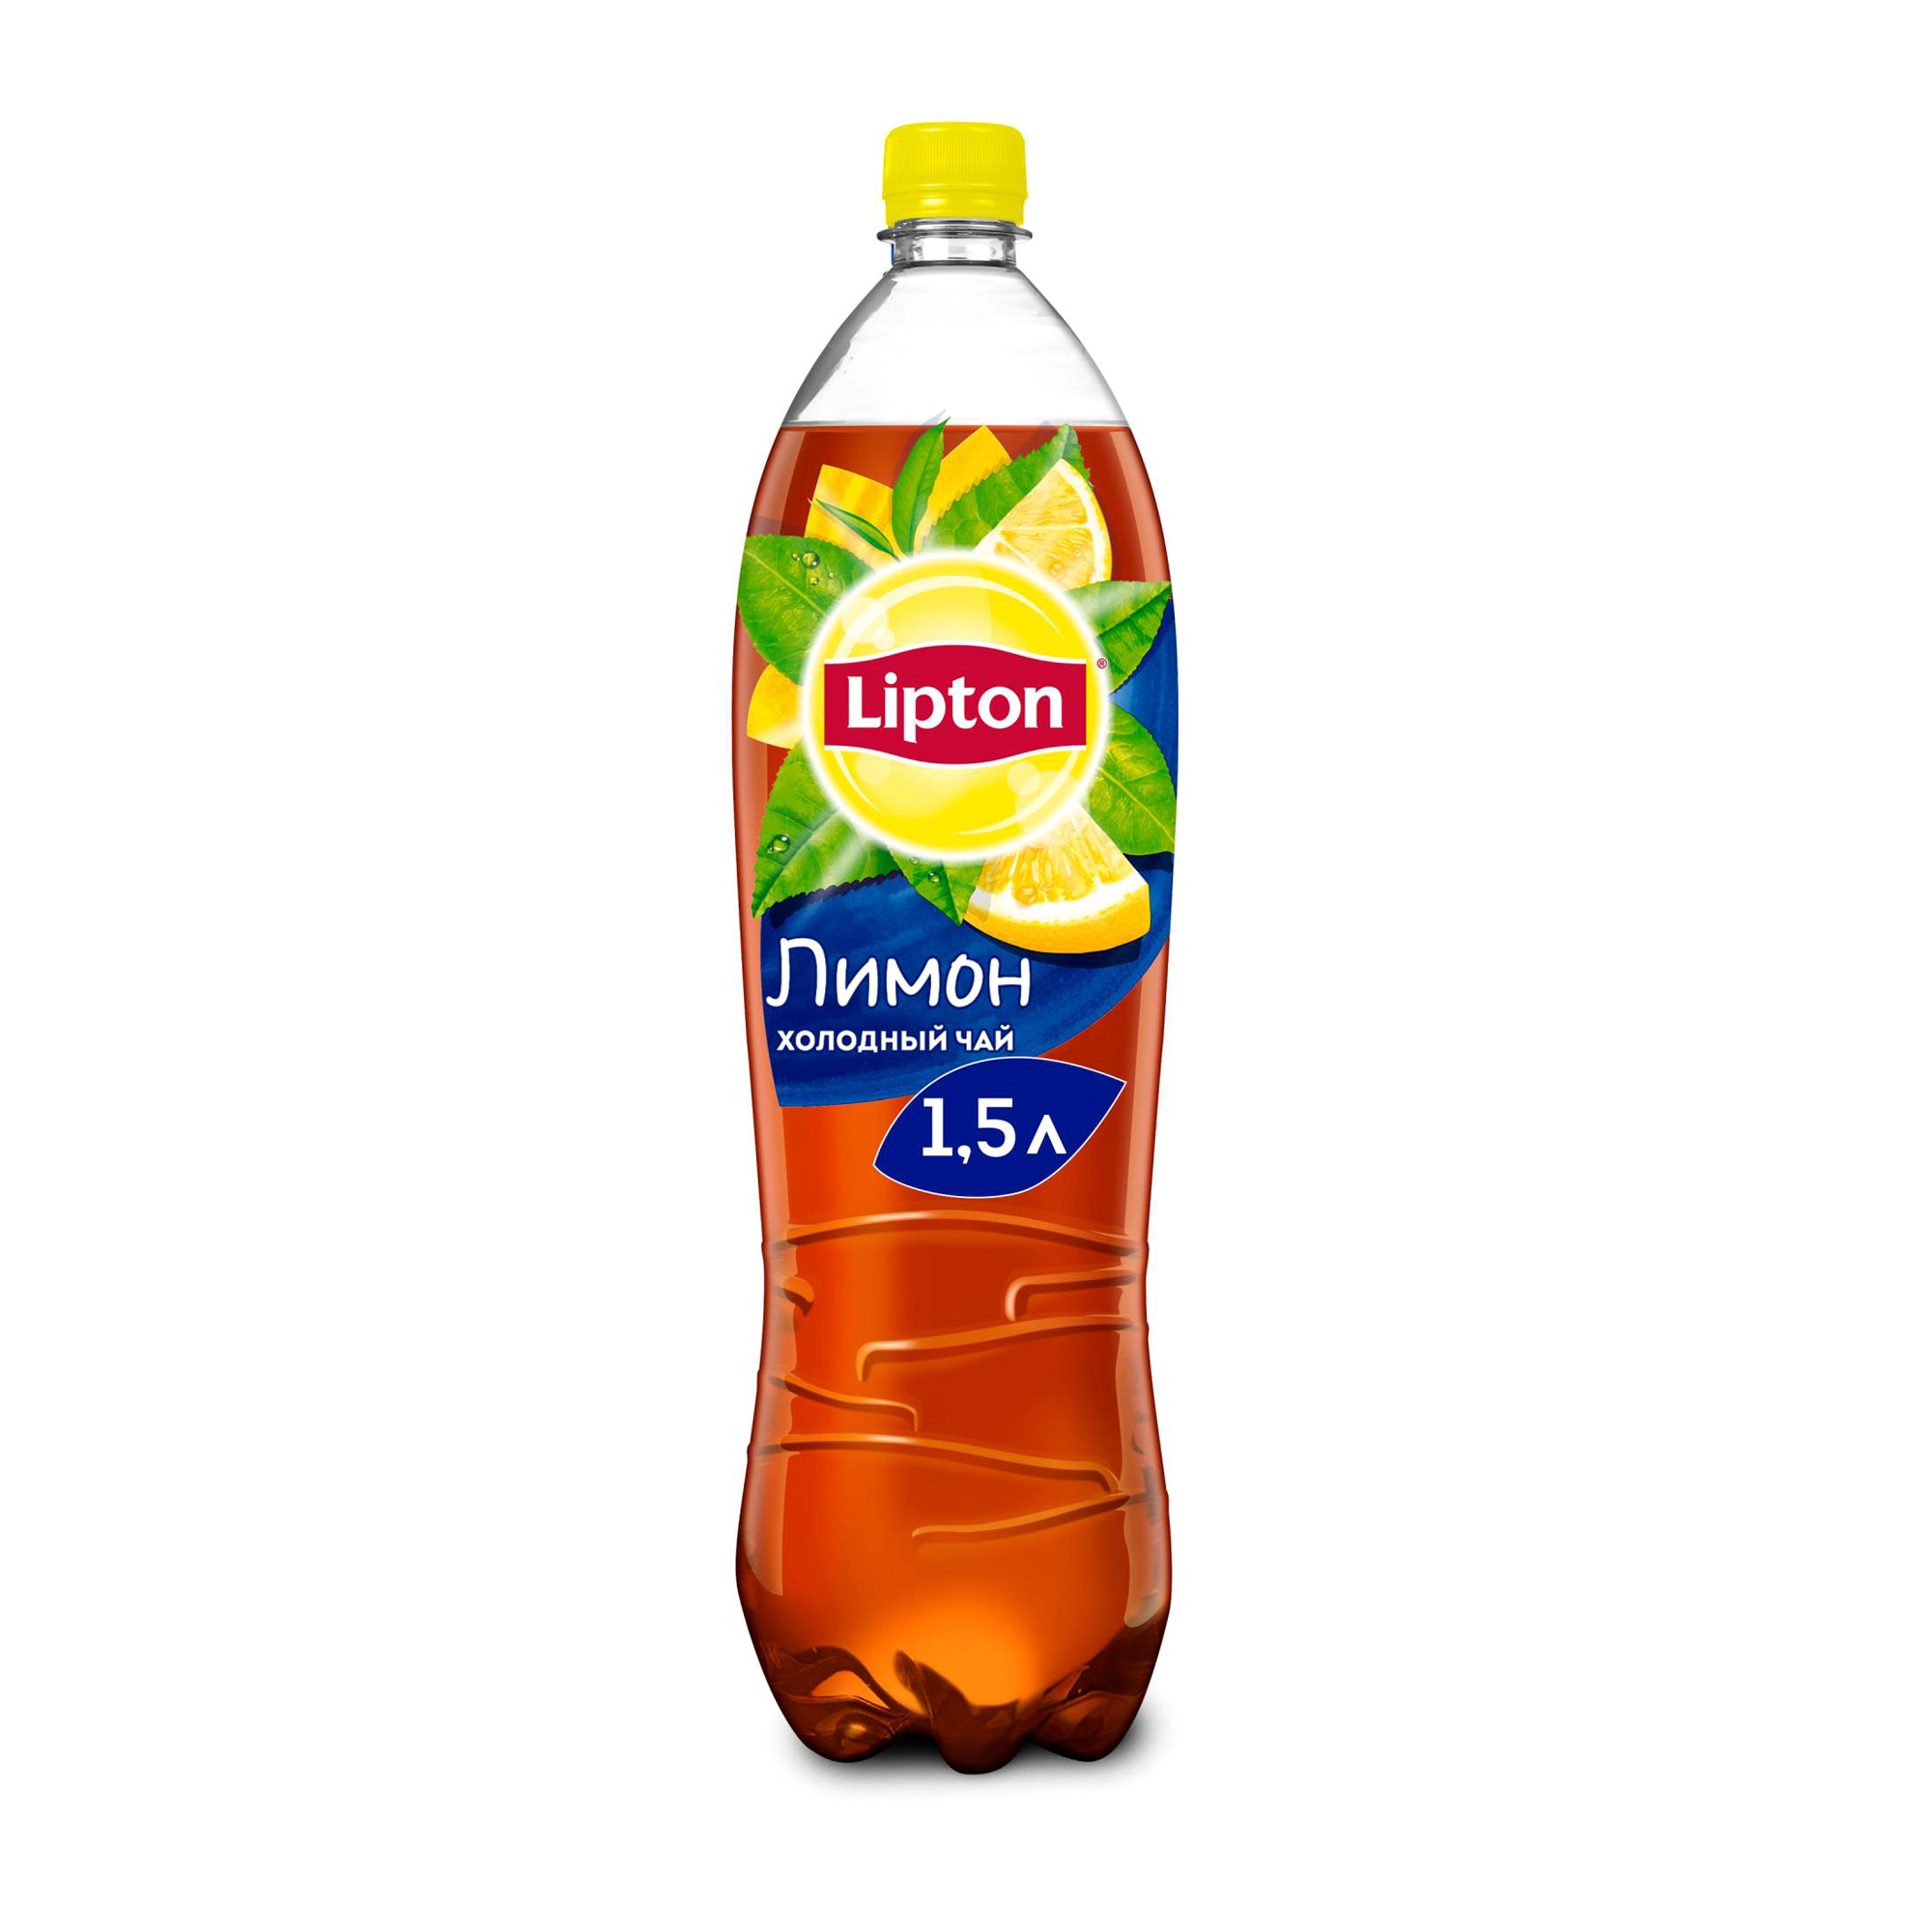 Холодный чай Lipton Черный Лимон 1,5 л холодный чай lipton липтон персик 1 литр пэт 12 шт в уп